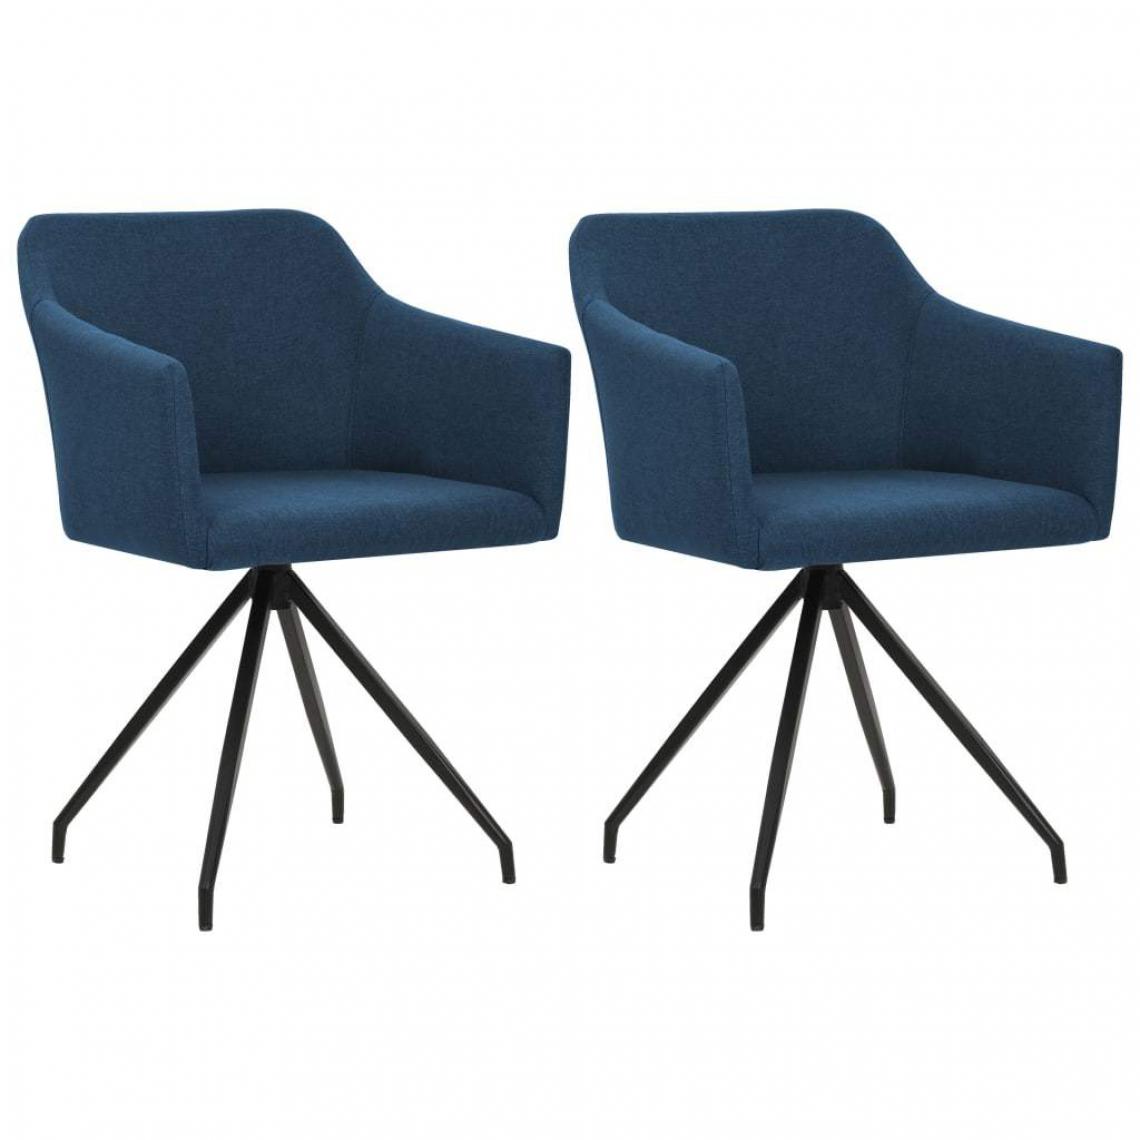 Decoshop26 - Lot de 2 chaises de salle à manger cuisine design moderne tissu bleu CDS020223 - Chaises